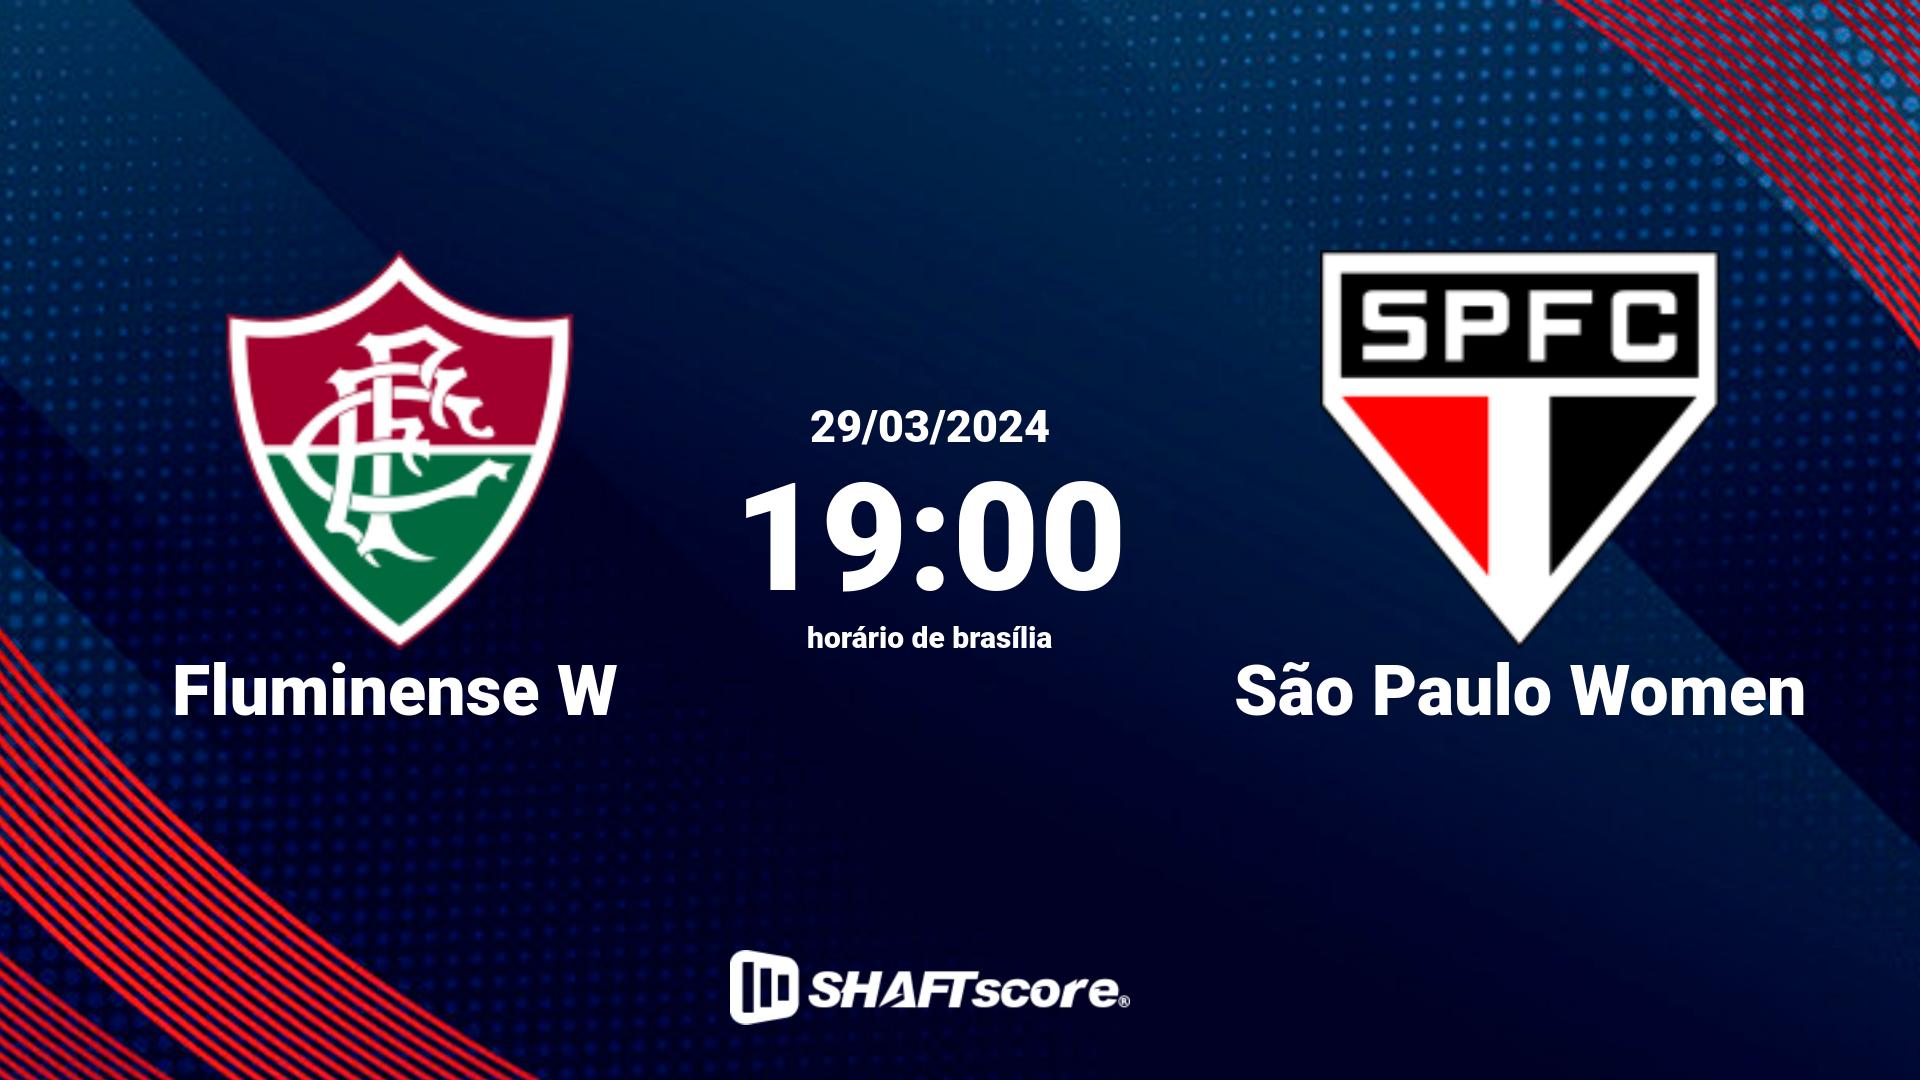 Estatísticas do jogo Fluminense W vs São Paulo Women 29.03 19:00